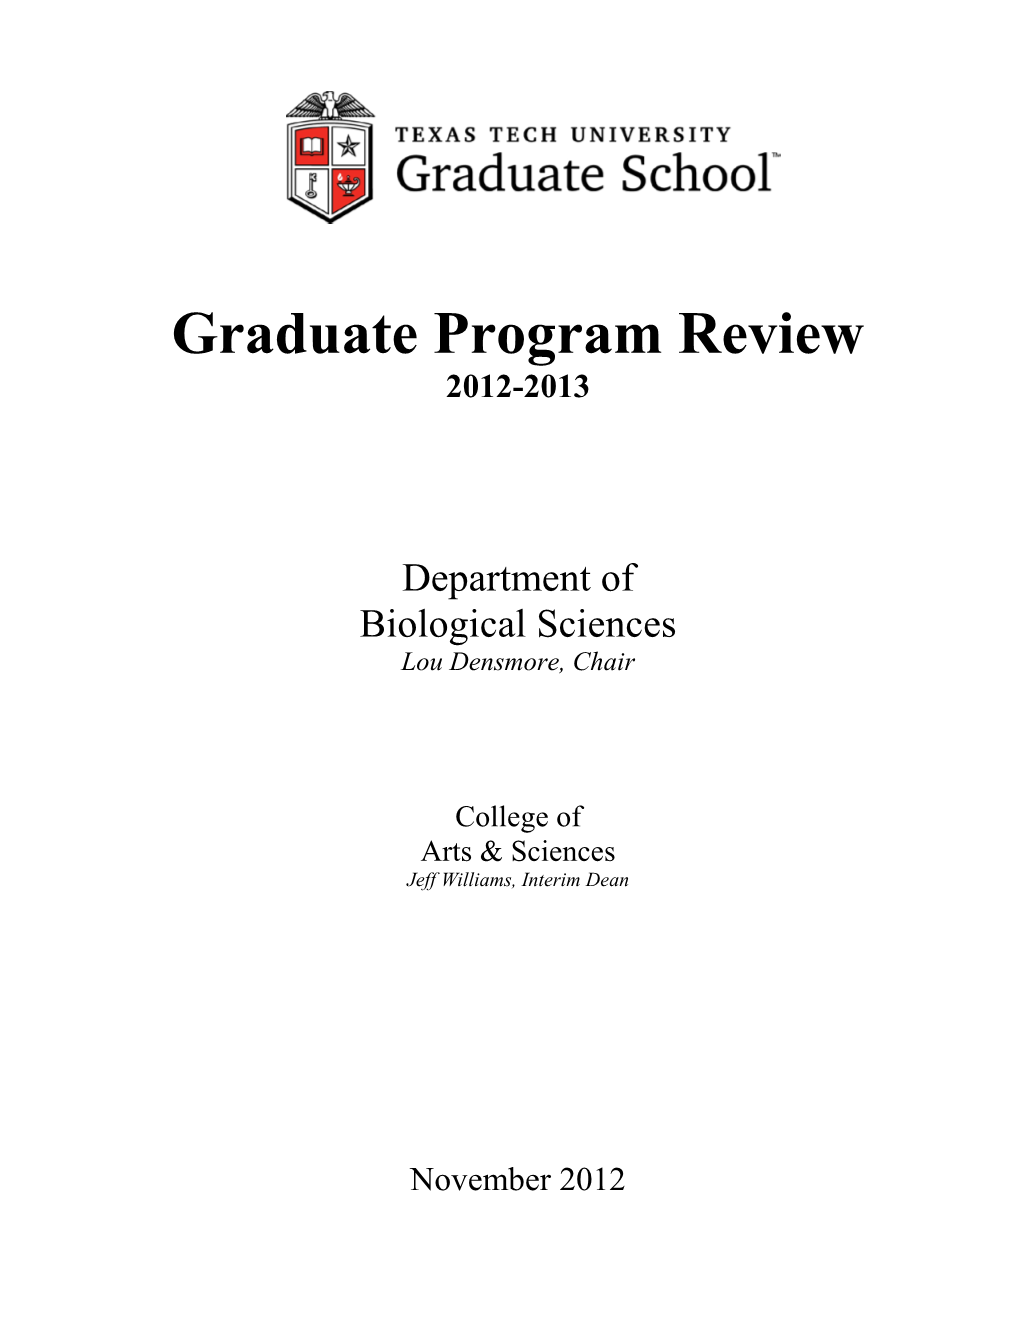 Graduate Program Review 2012-2013